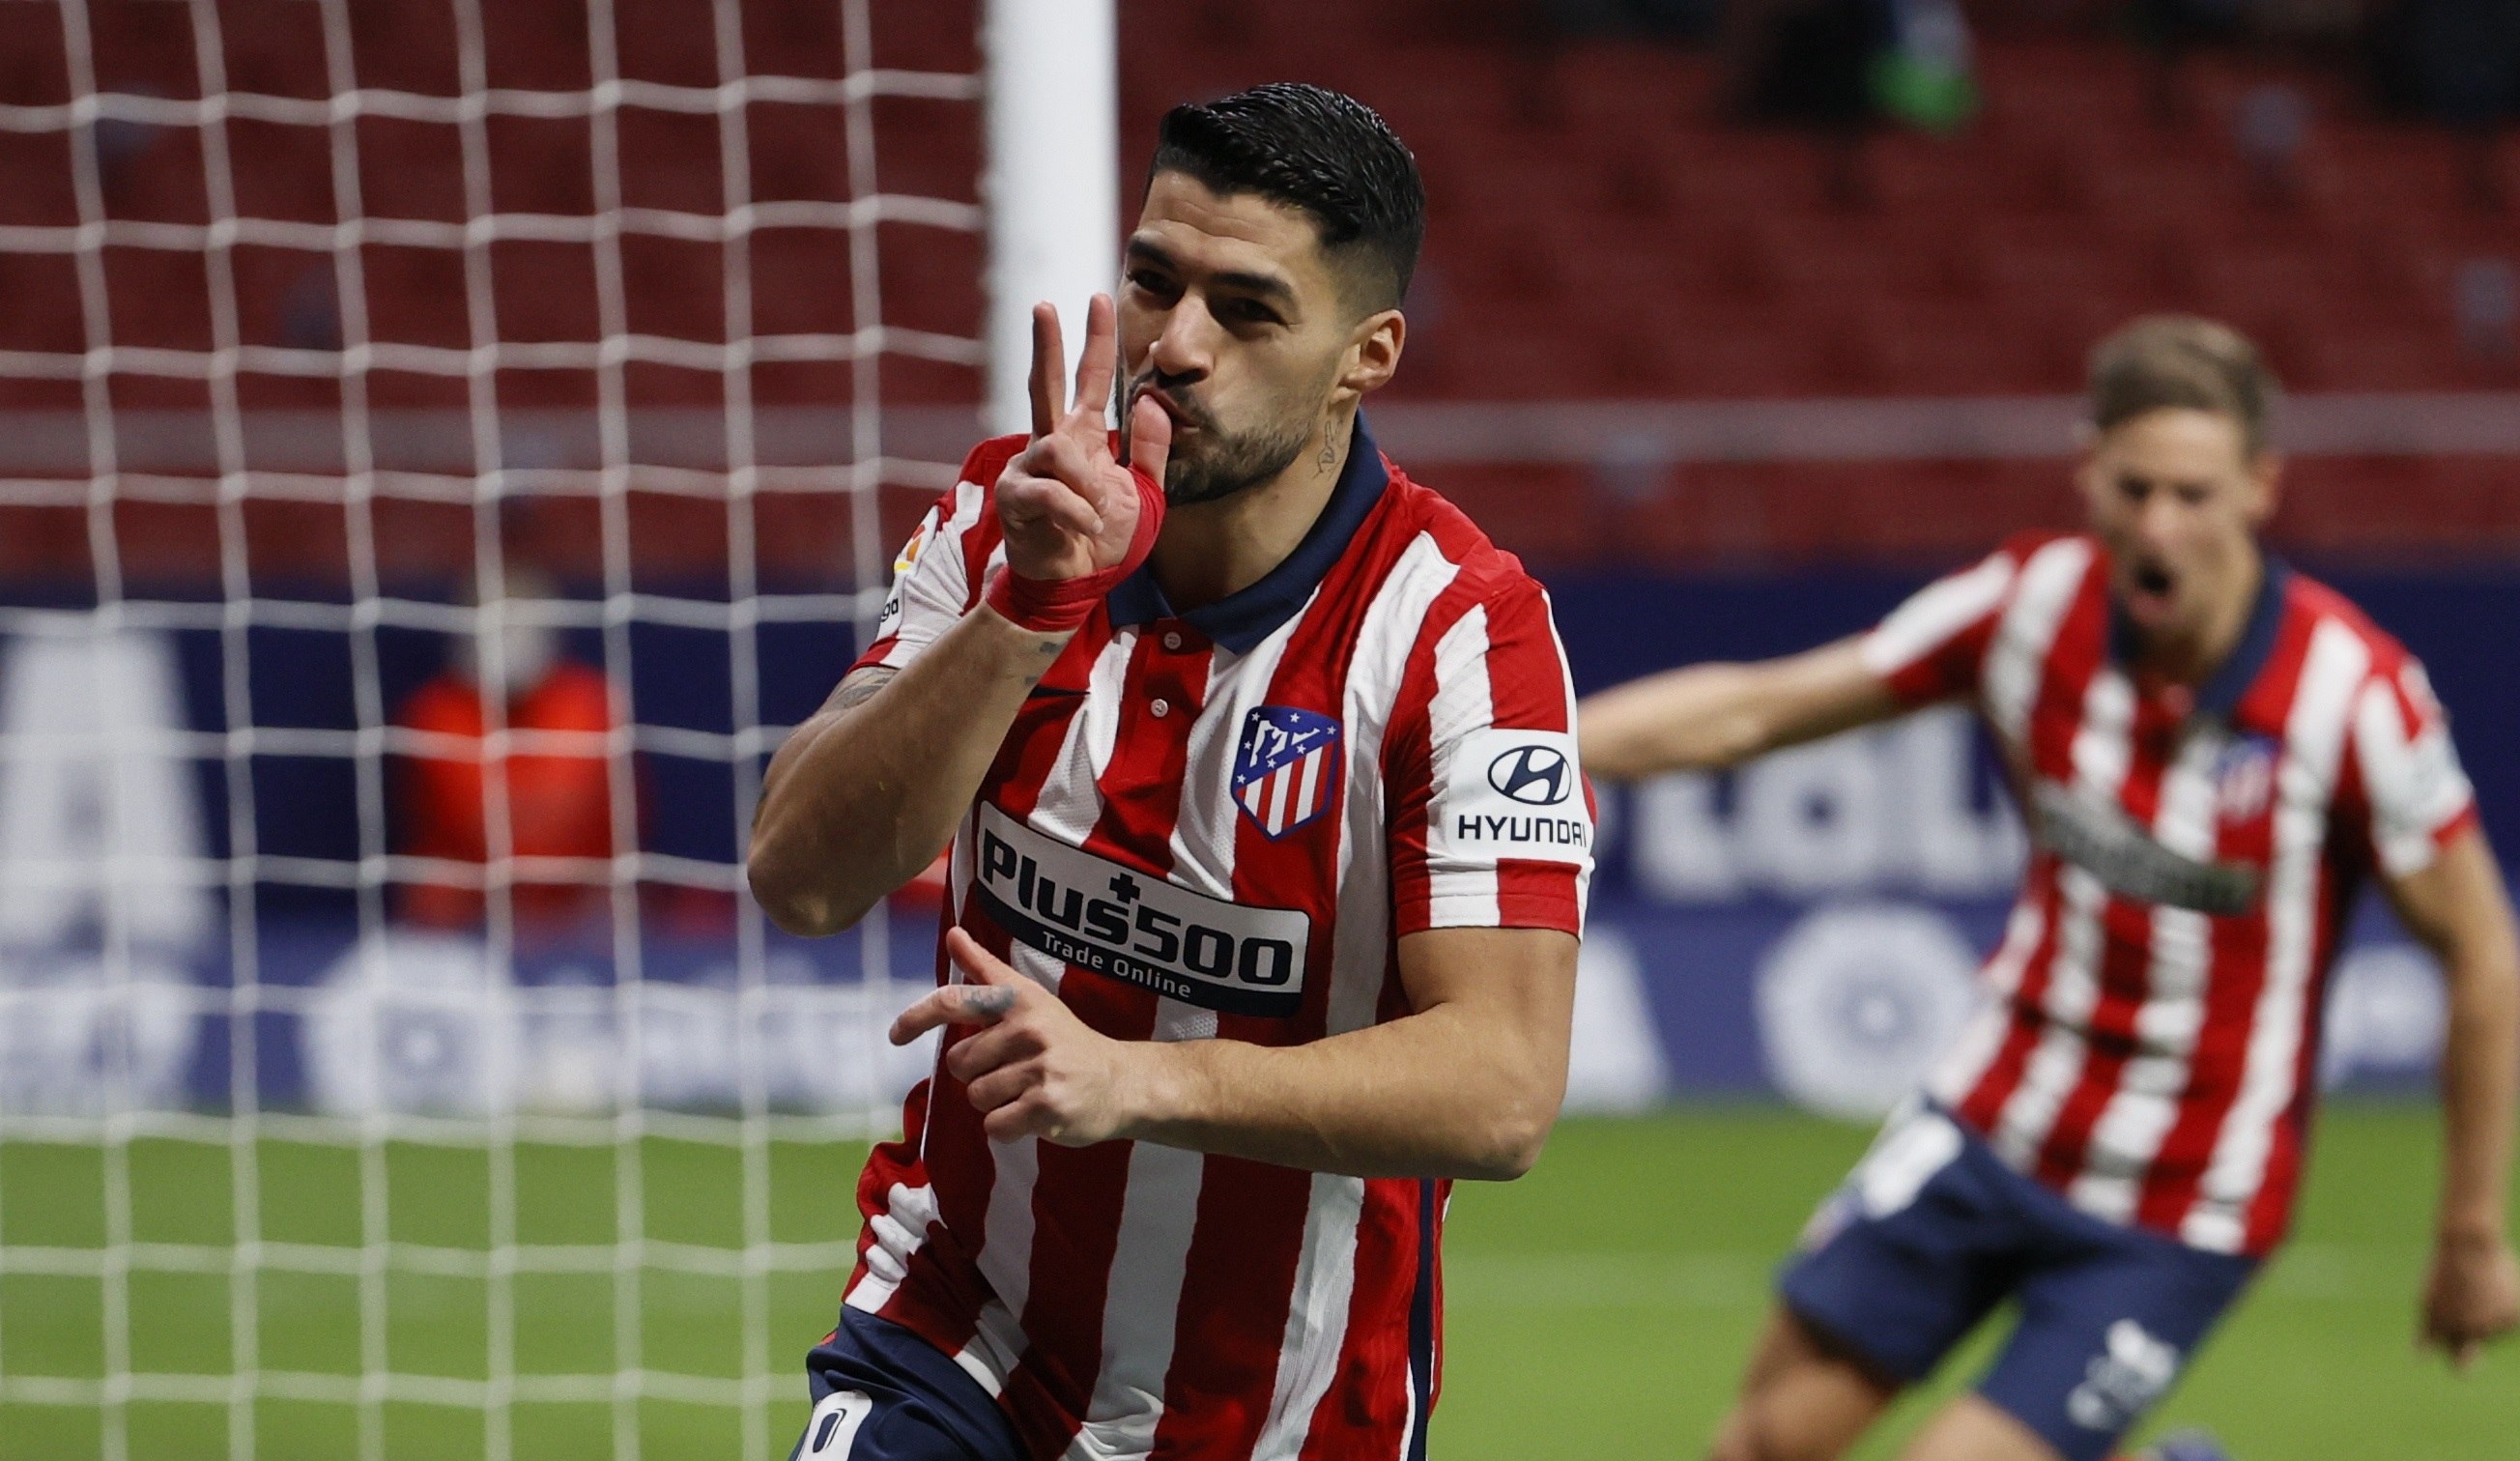 Luis Suárez, quien este 24 de enero está de cumpleaños (34 años), anotó un gol en la victoria del Atlético de Madrid ante el Valencia. (Foto Prensa Libre: EFE)